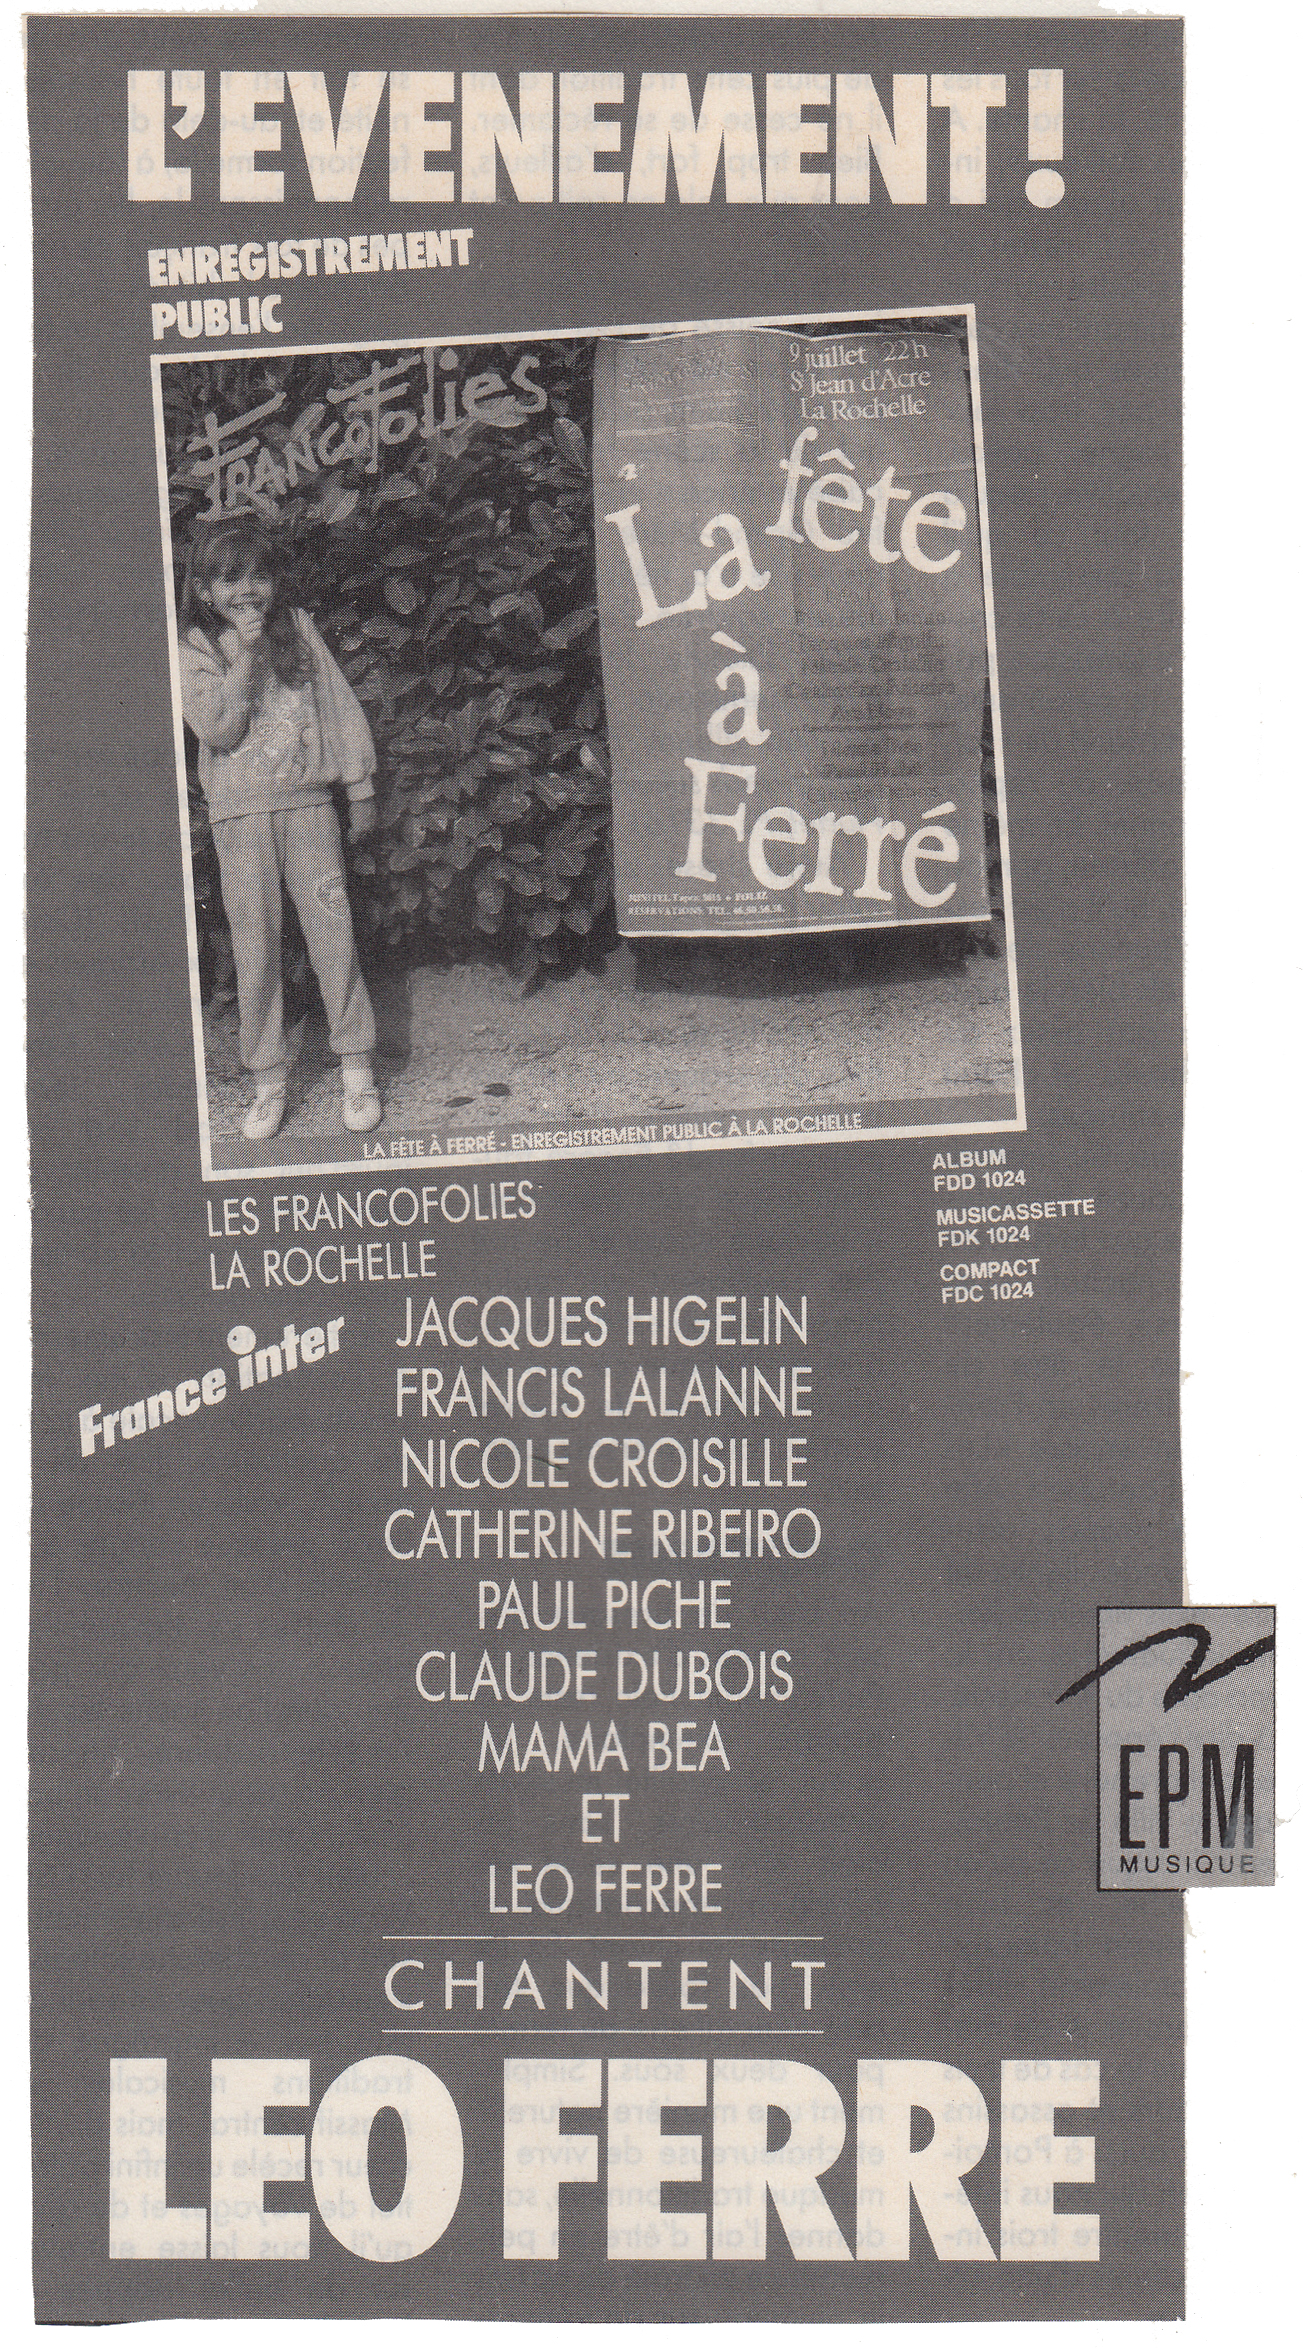 Léo Ferré - Paroles et musique n°4 de février 1988